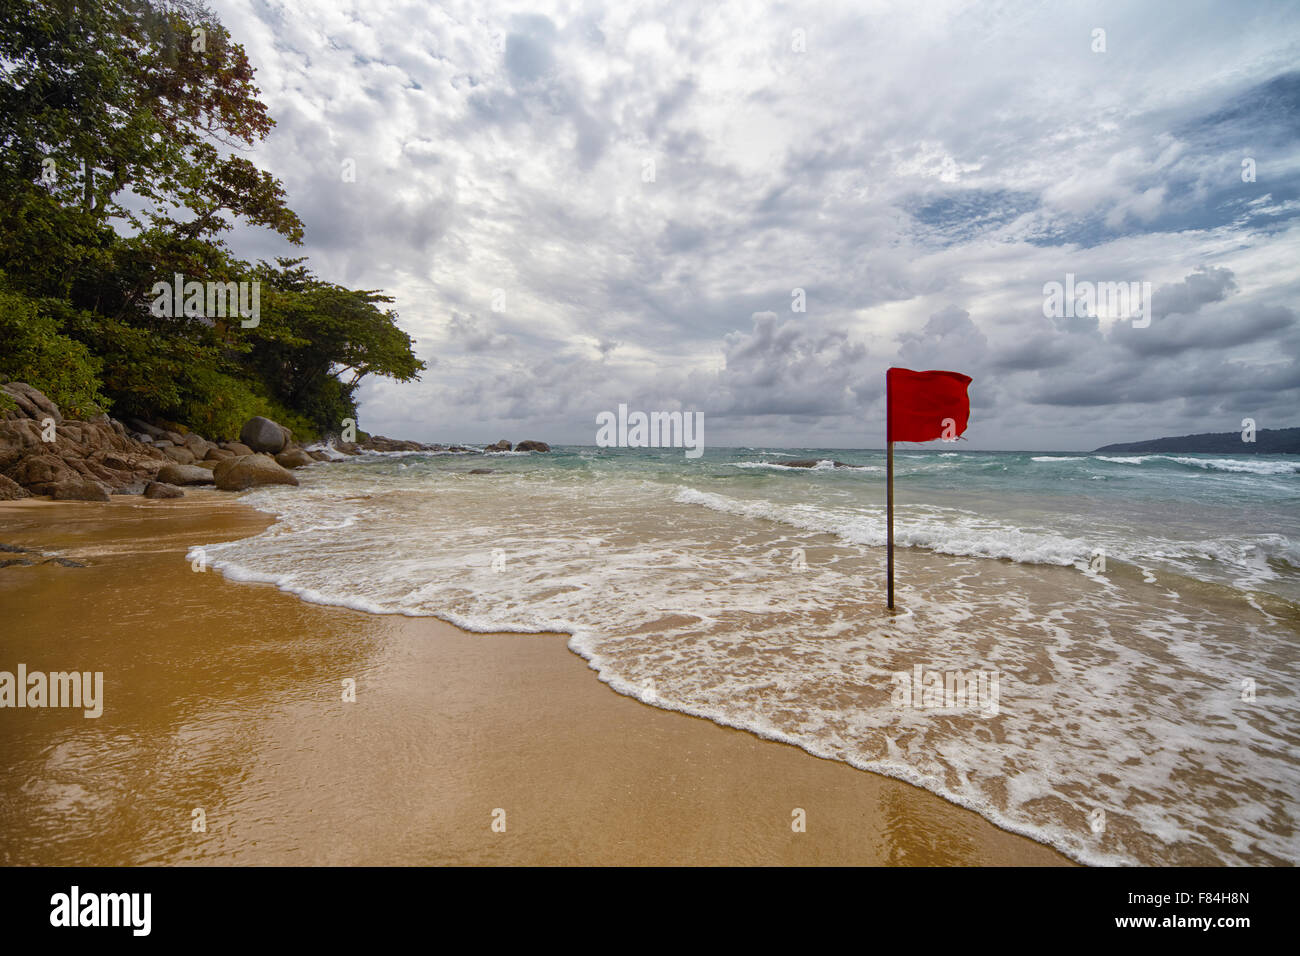 Bandera roja en una playa aislada en Tailandia wiyh un cielo nublado en la parte trasera del terreno. Foto de stock